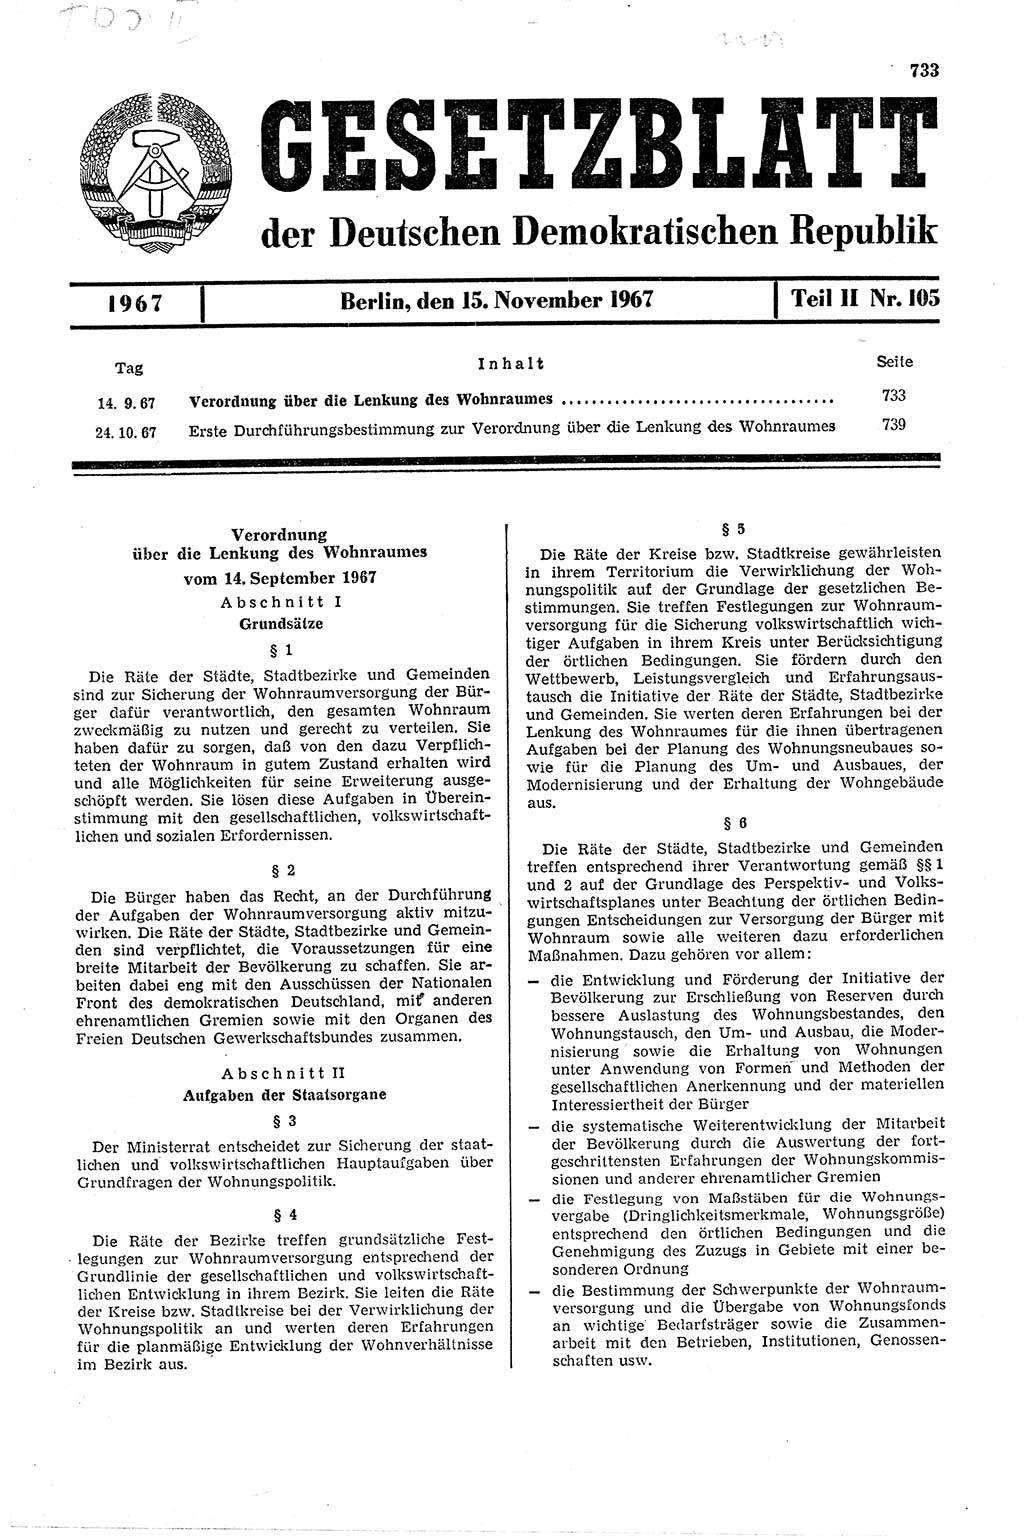 Gesetzblatt (GBl.) der Deutschen Demokratischen Republik (DDR) Teil ⅠⅠ 1967, Seite 733 (GBl. DDR ⅠⅠ 1967, S. 733)